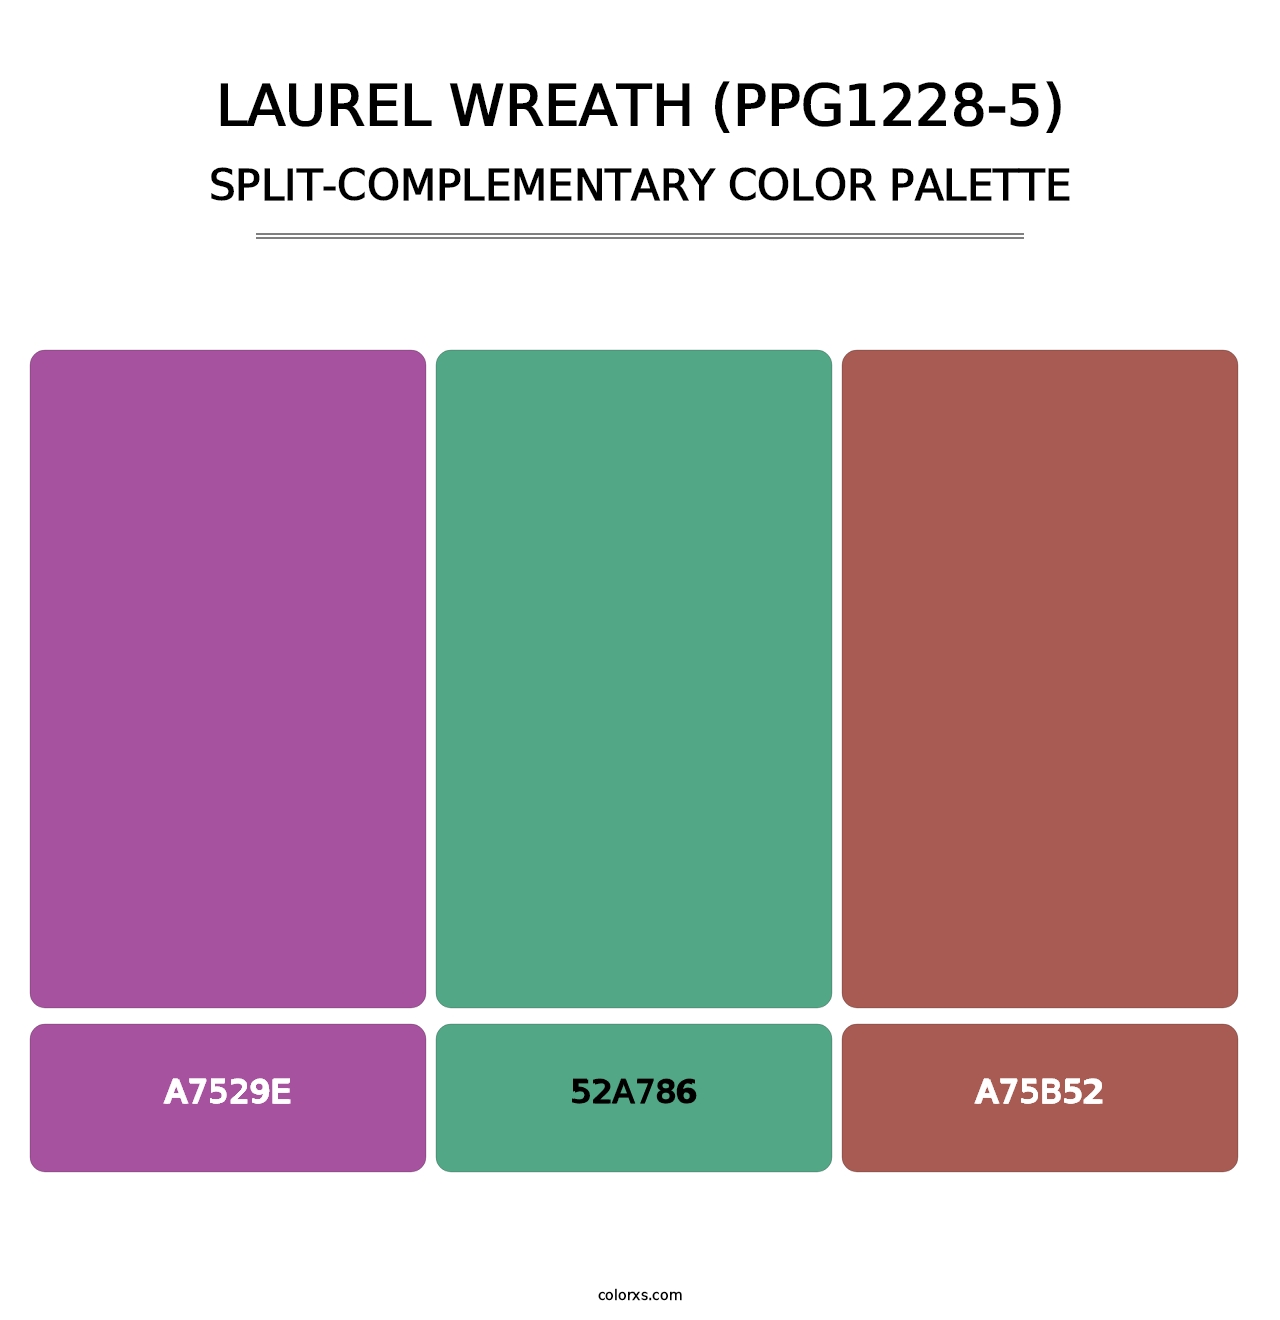 Laurel Wreath (PPG1228-5) - Split-Complementary Color Palette